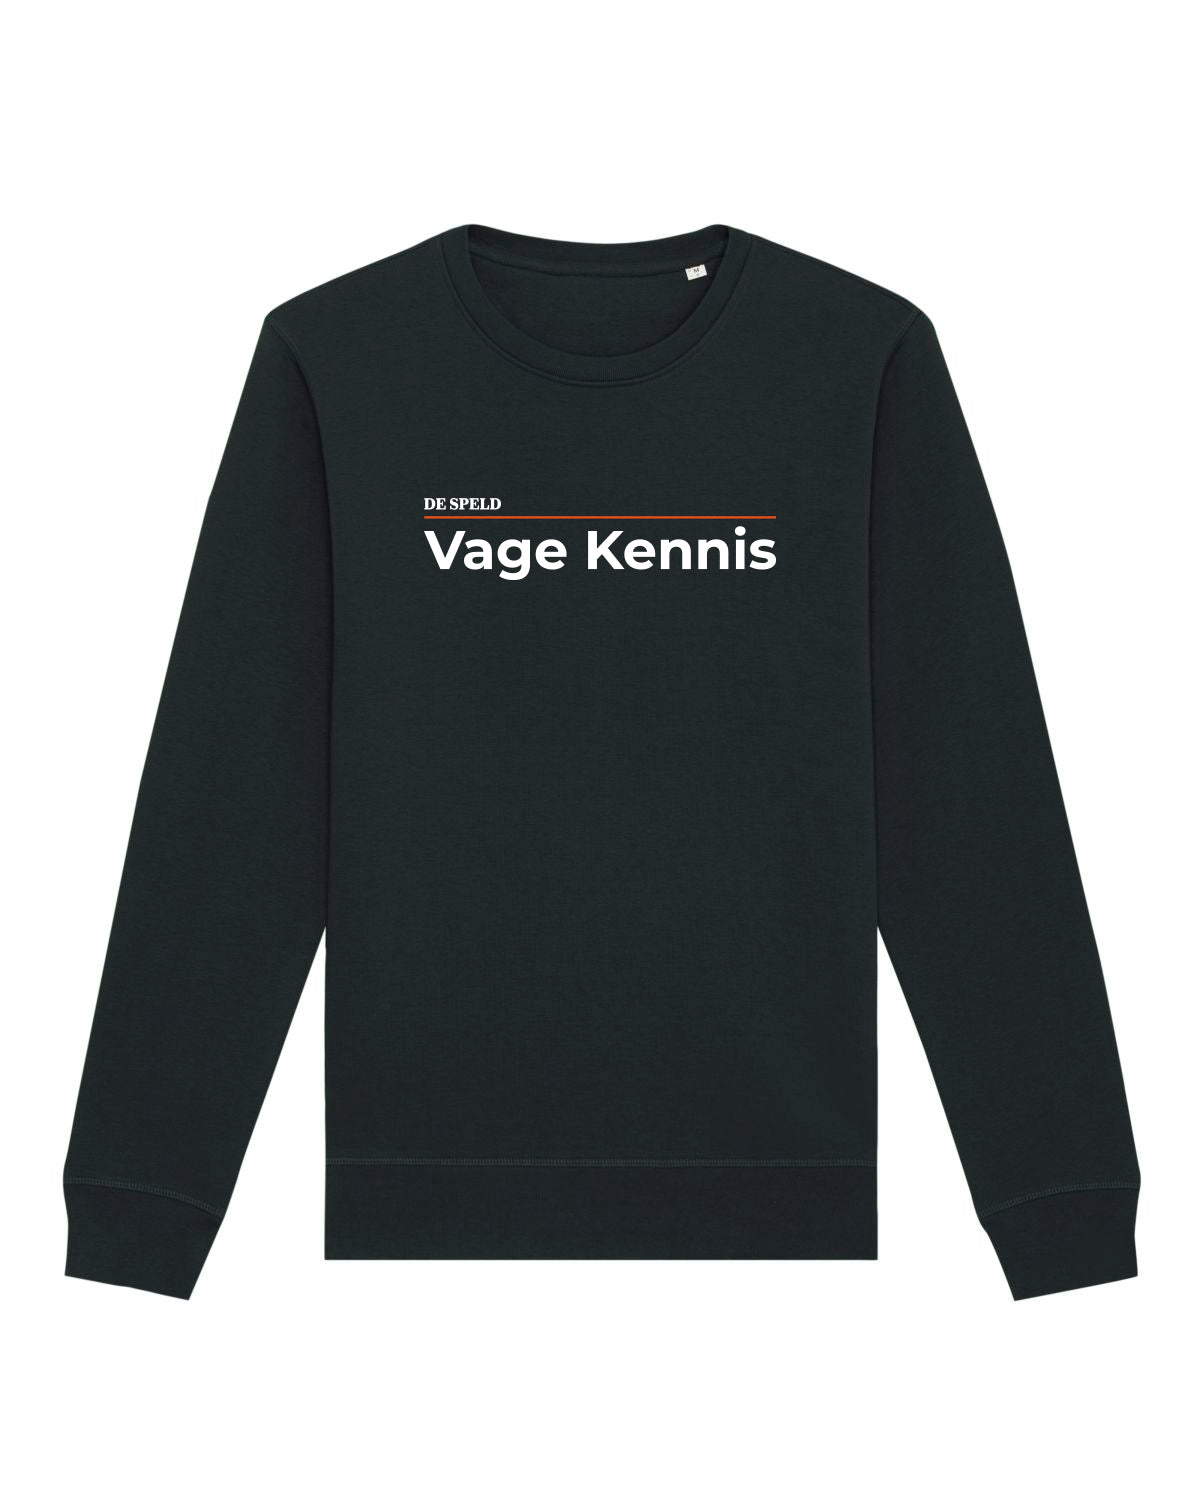 Sweater 'Vage Kennis' (grijs/zwart/wit, bio) | De Speld